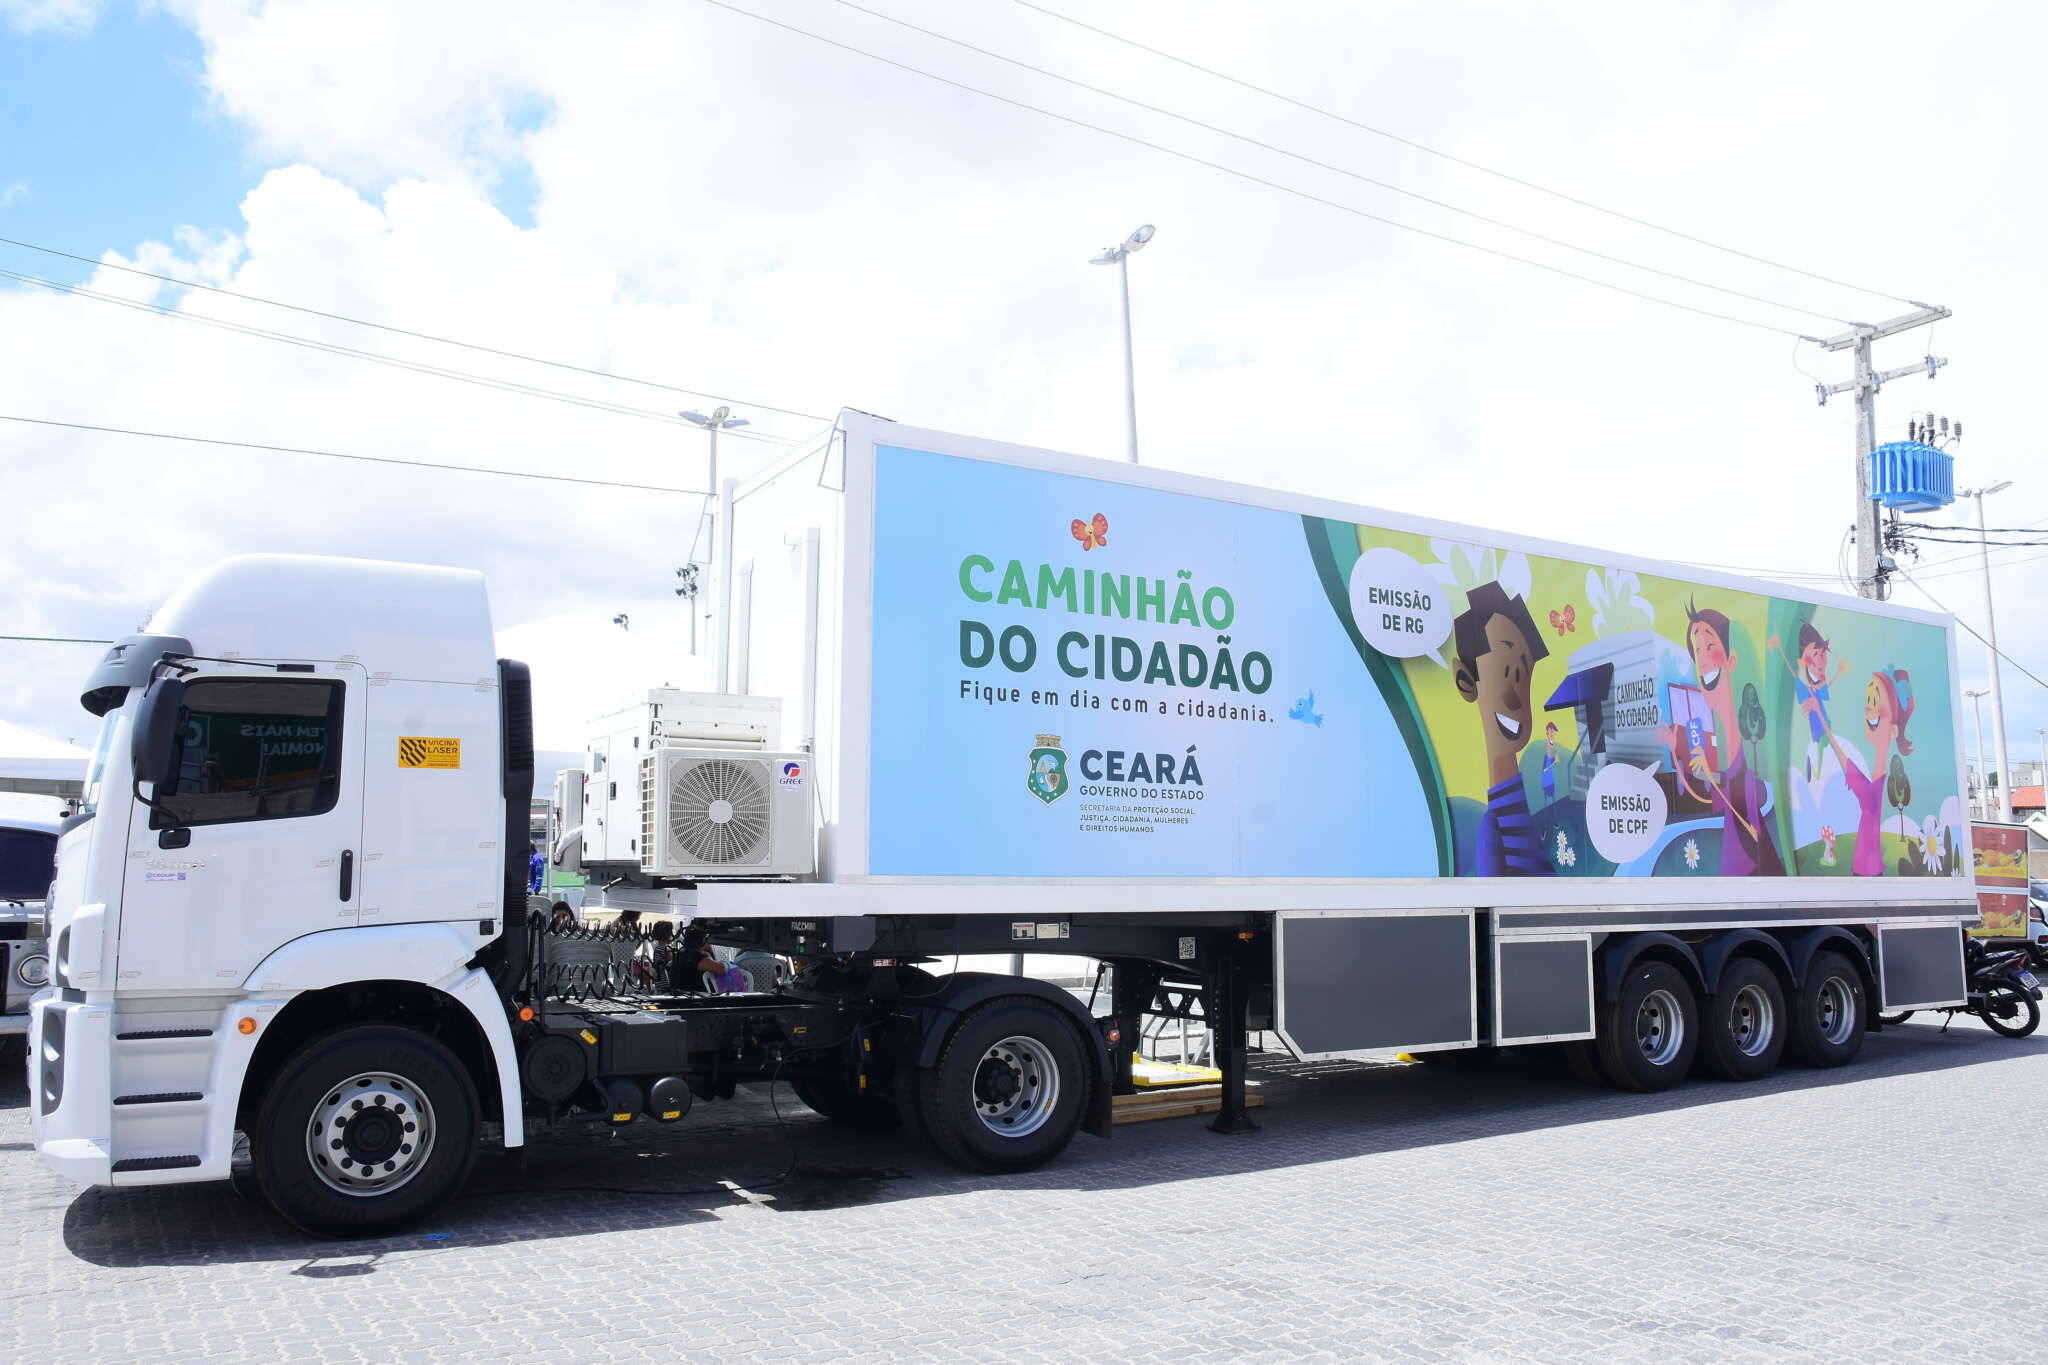 Caminhão do Cidadão atende sete comunidades em Fortaleza, Cruz e Viçosa do Ceará